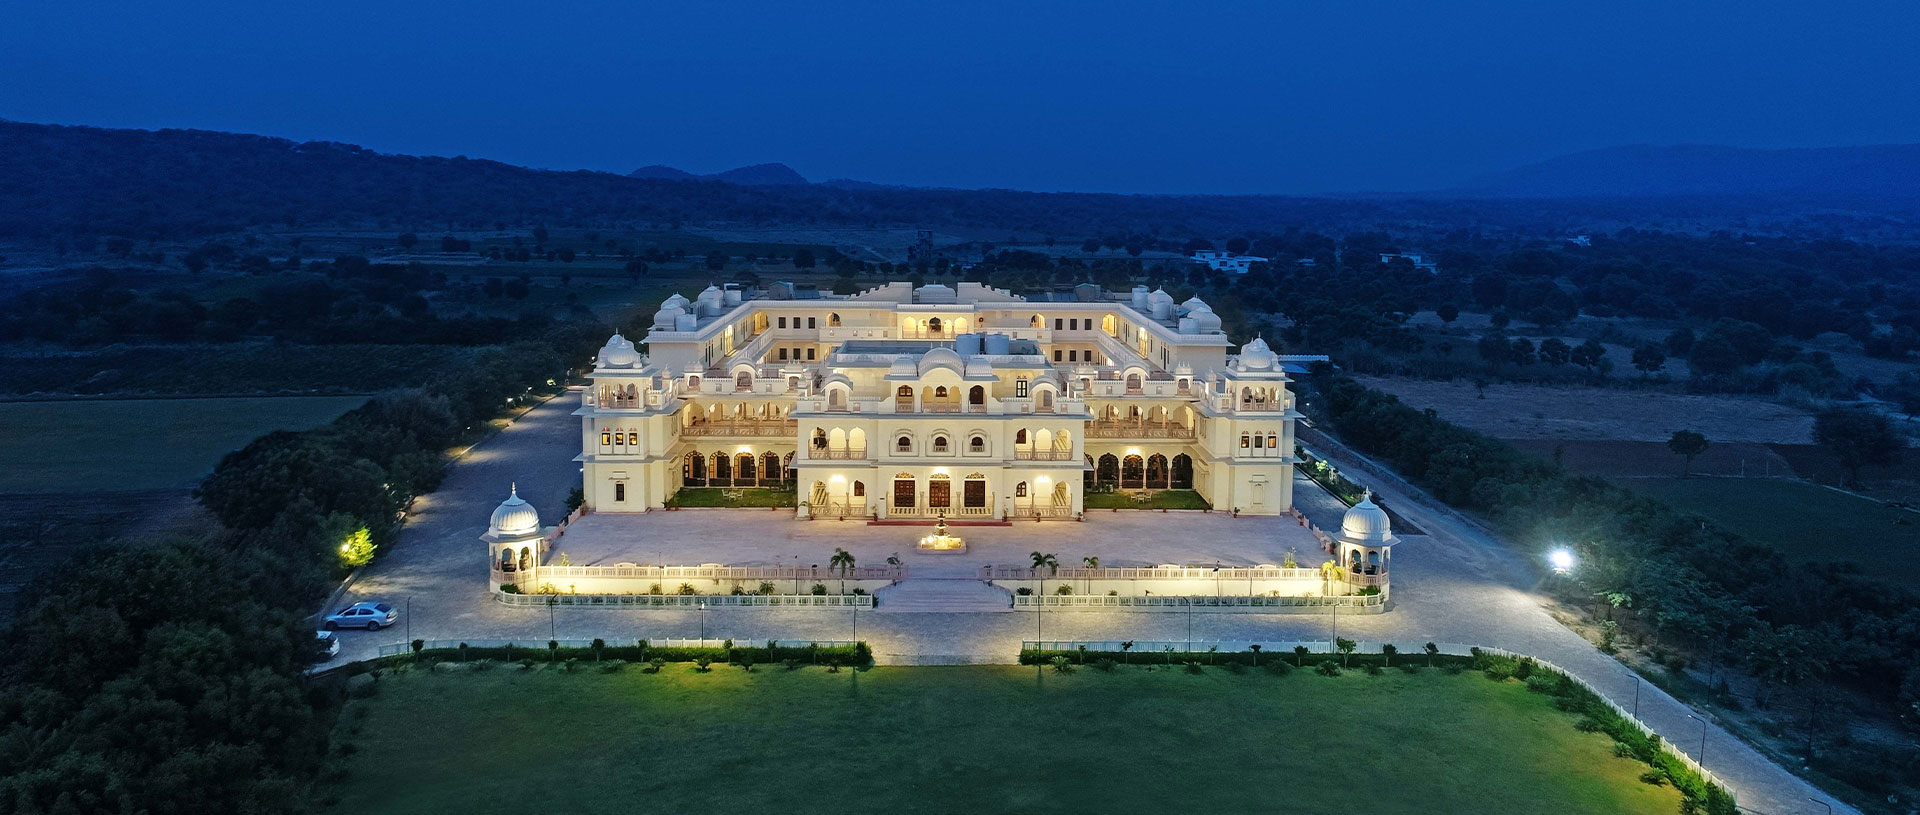 The Jaibagh Palace - Jaipur